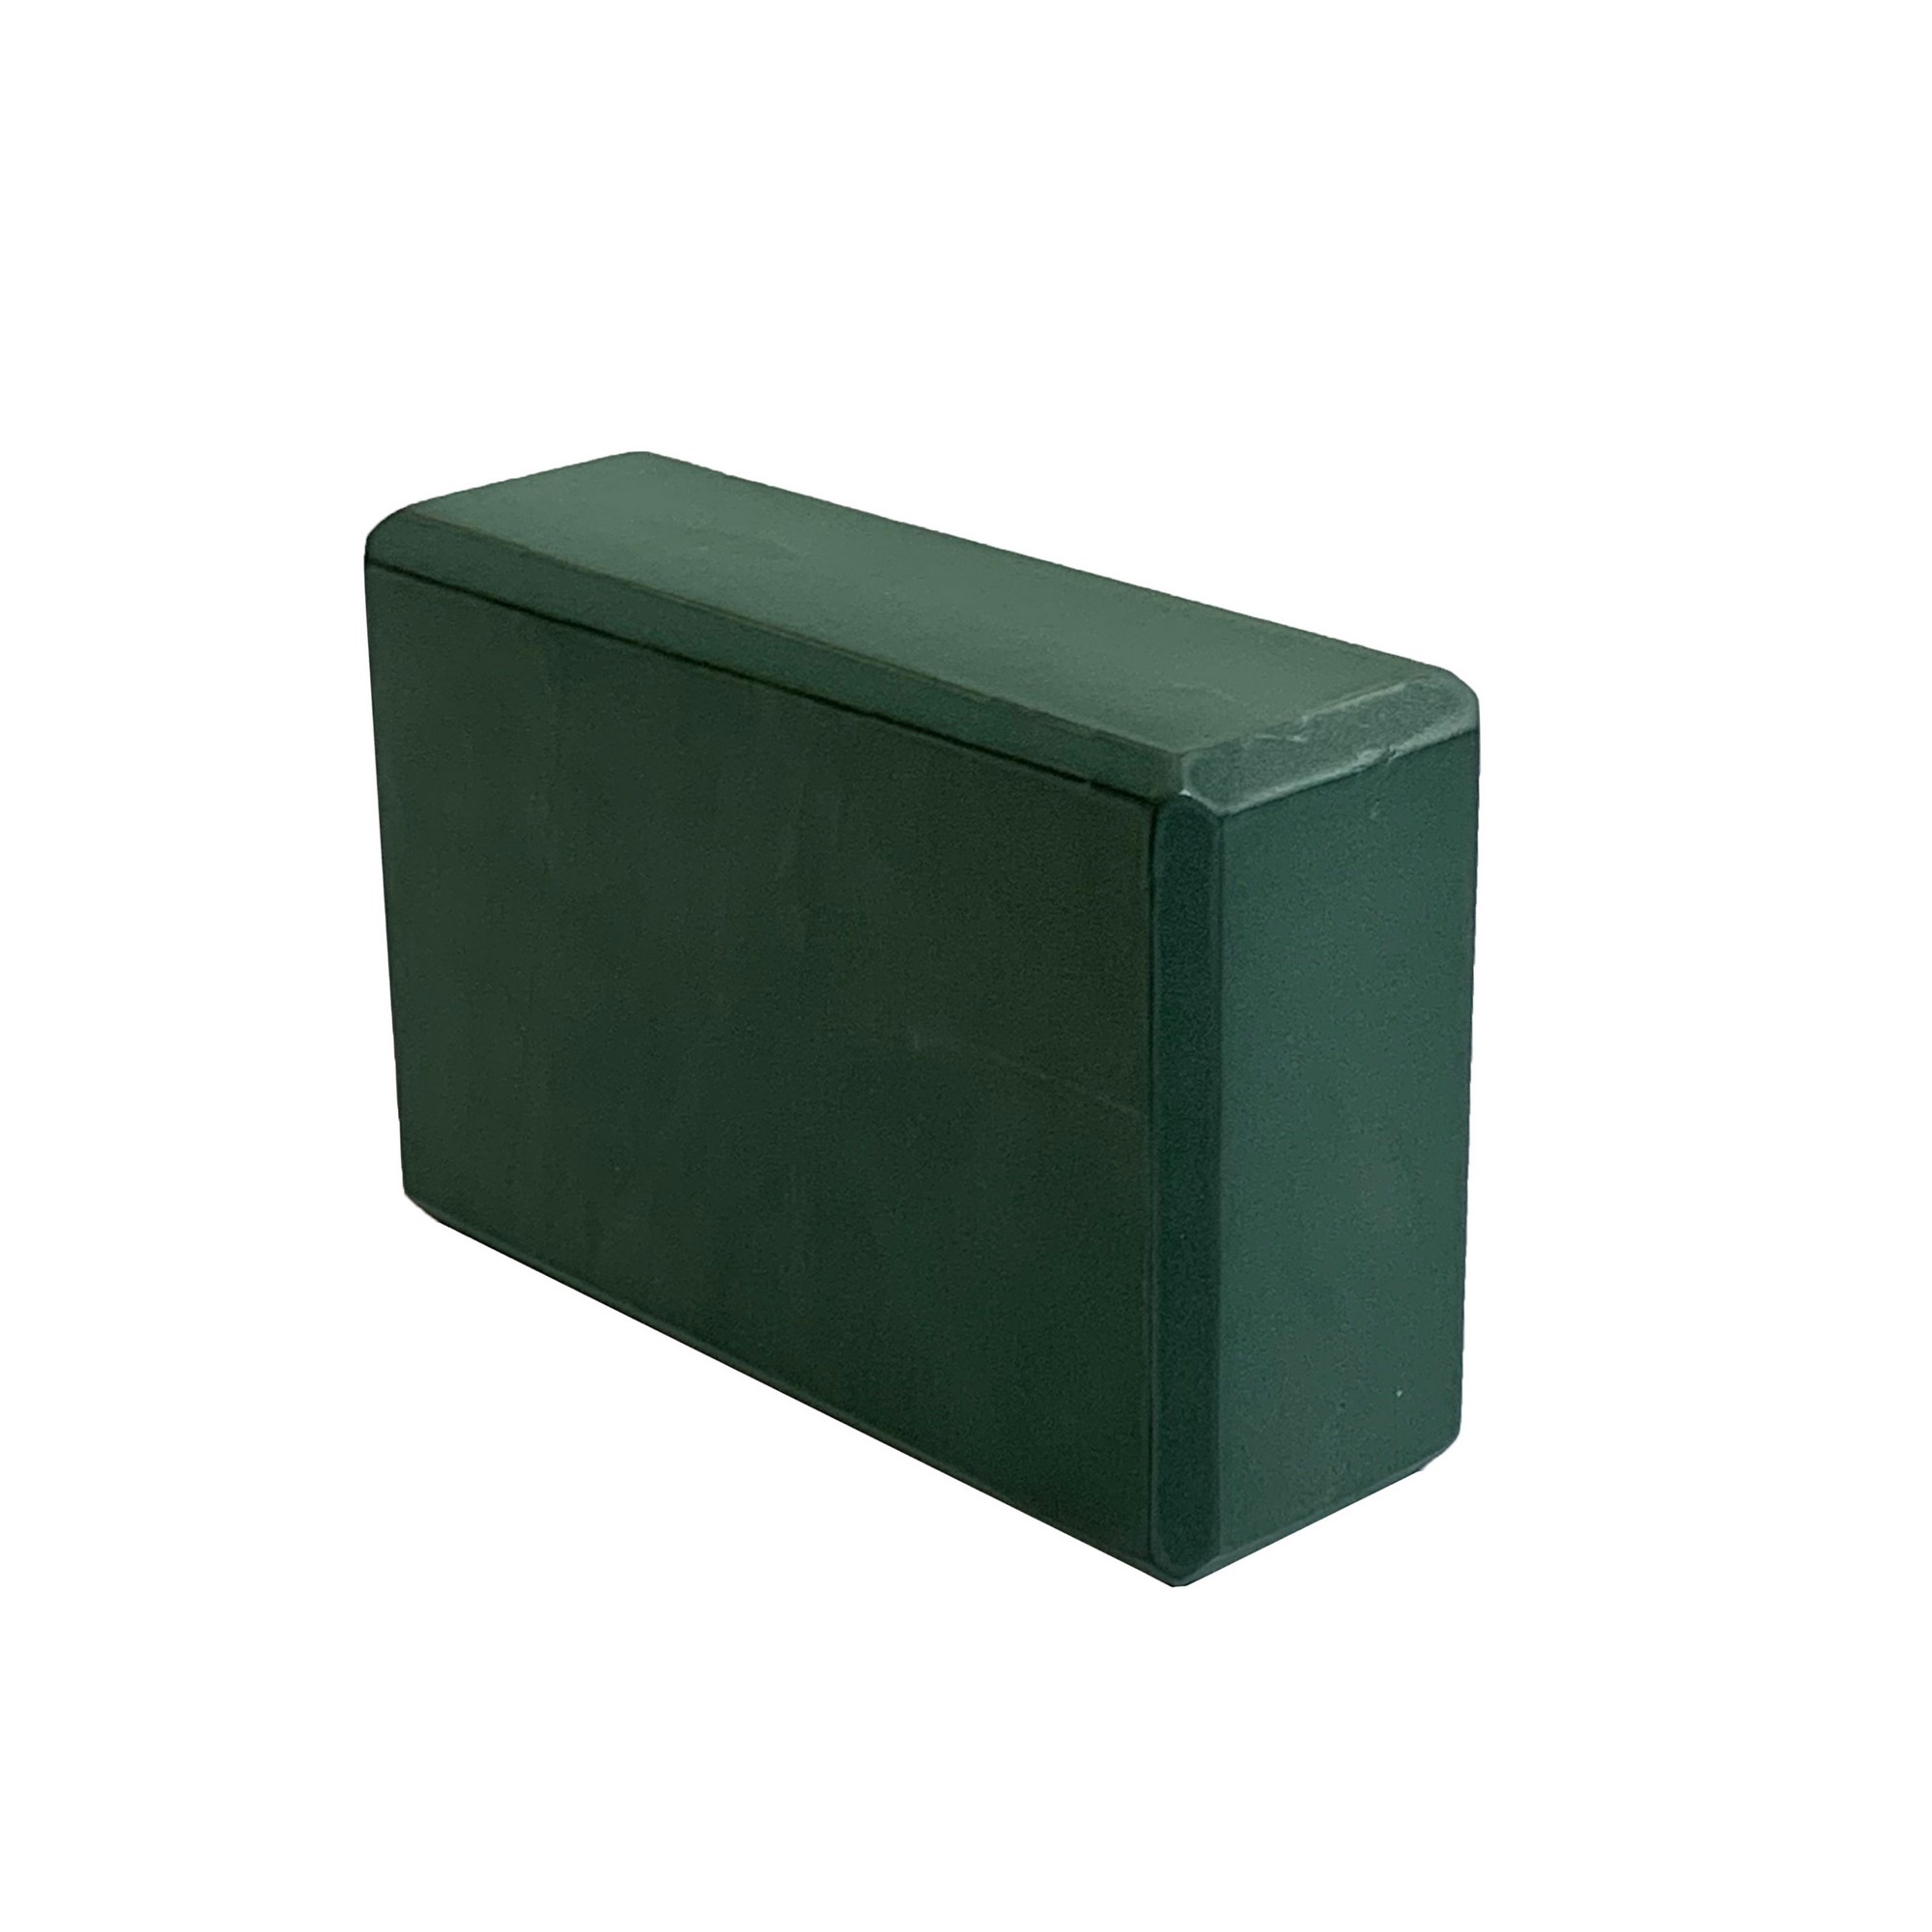 Йога блок Sportex полумягкий, из вспененного ЭВА 22,3х15х7,6 см E39131-48 темно зеленый